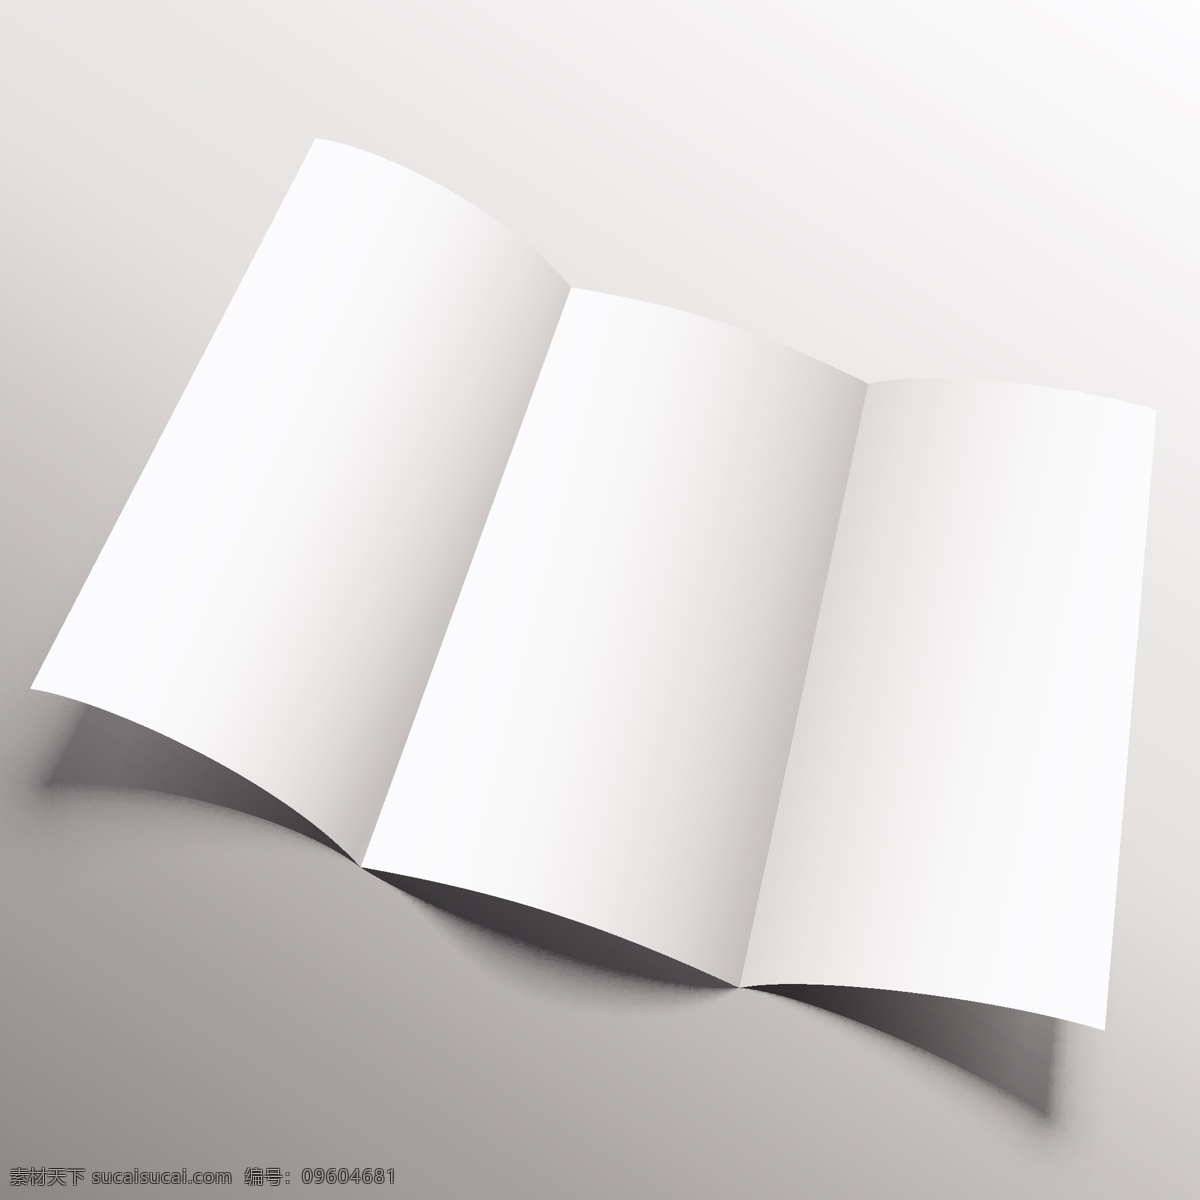 打开宣传册 模仿 小册子 样机 卡 模板 纸张 空间 传单 网站 演示 优雅 白色 灰色 阴影显示 指南 空白的 现实的 折叠 空